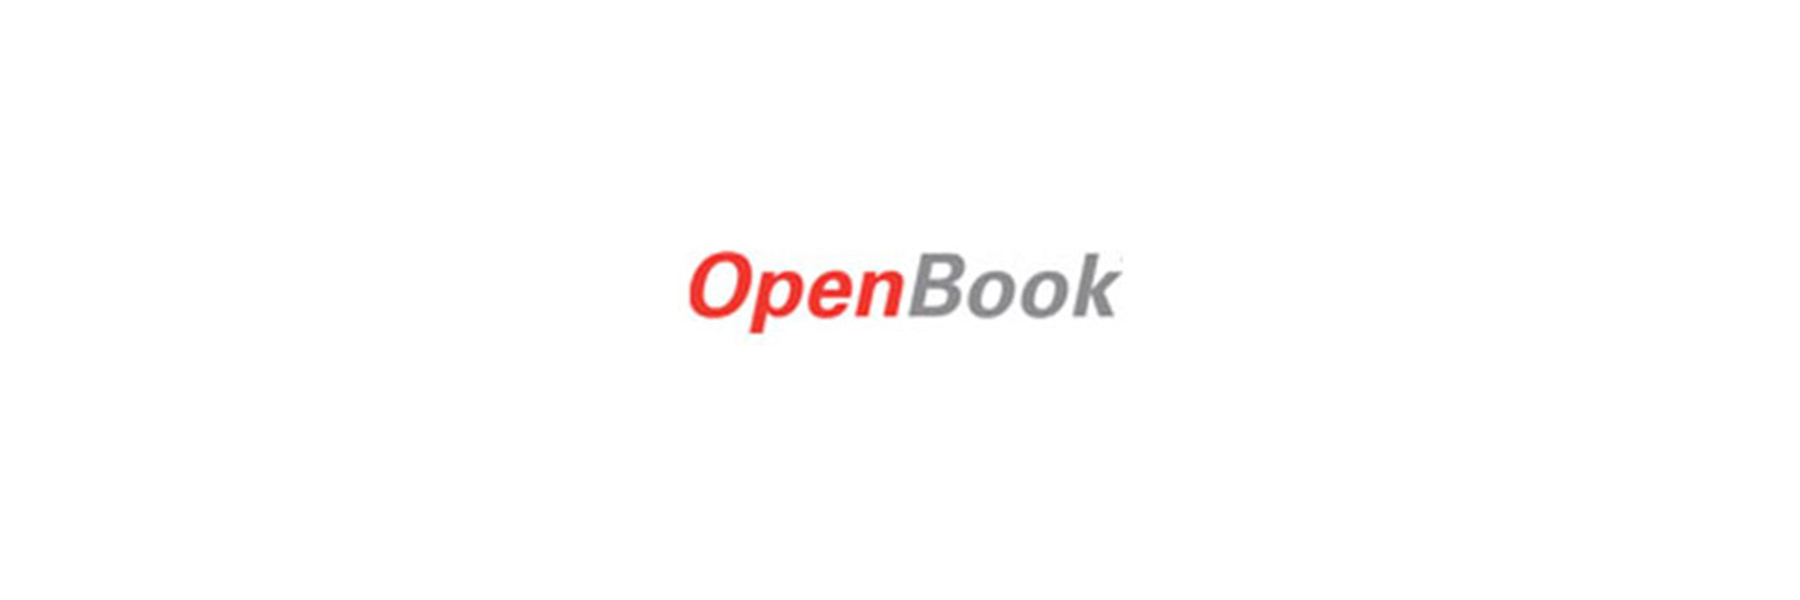 Abbildung des OpenBook Logos